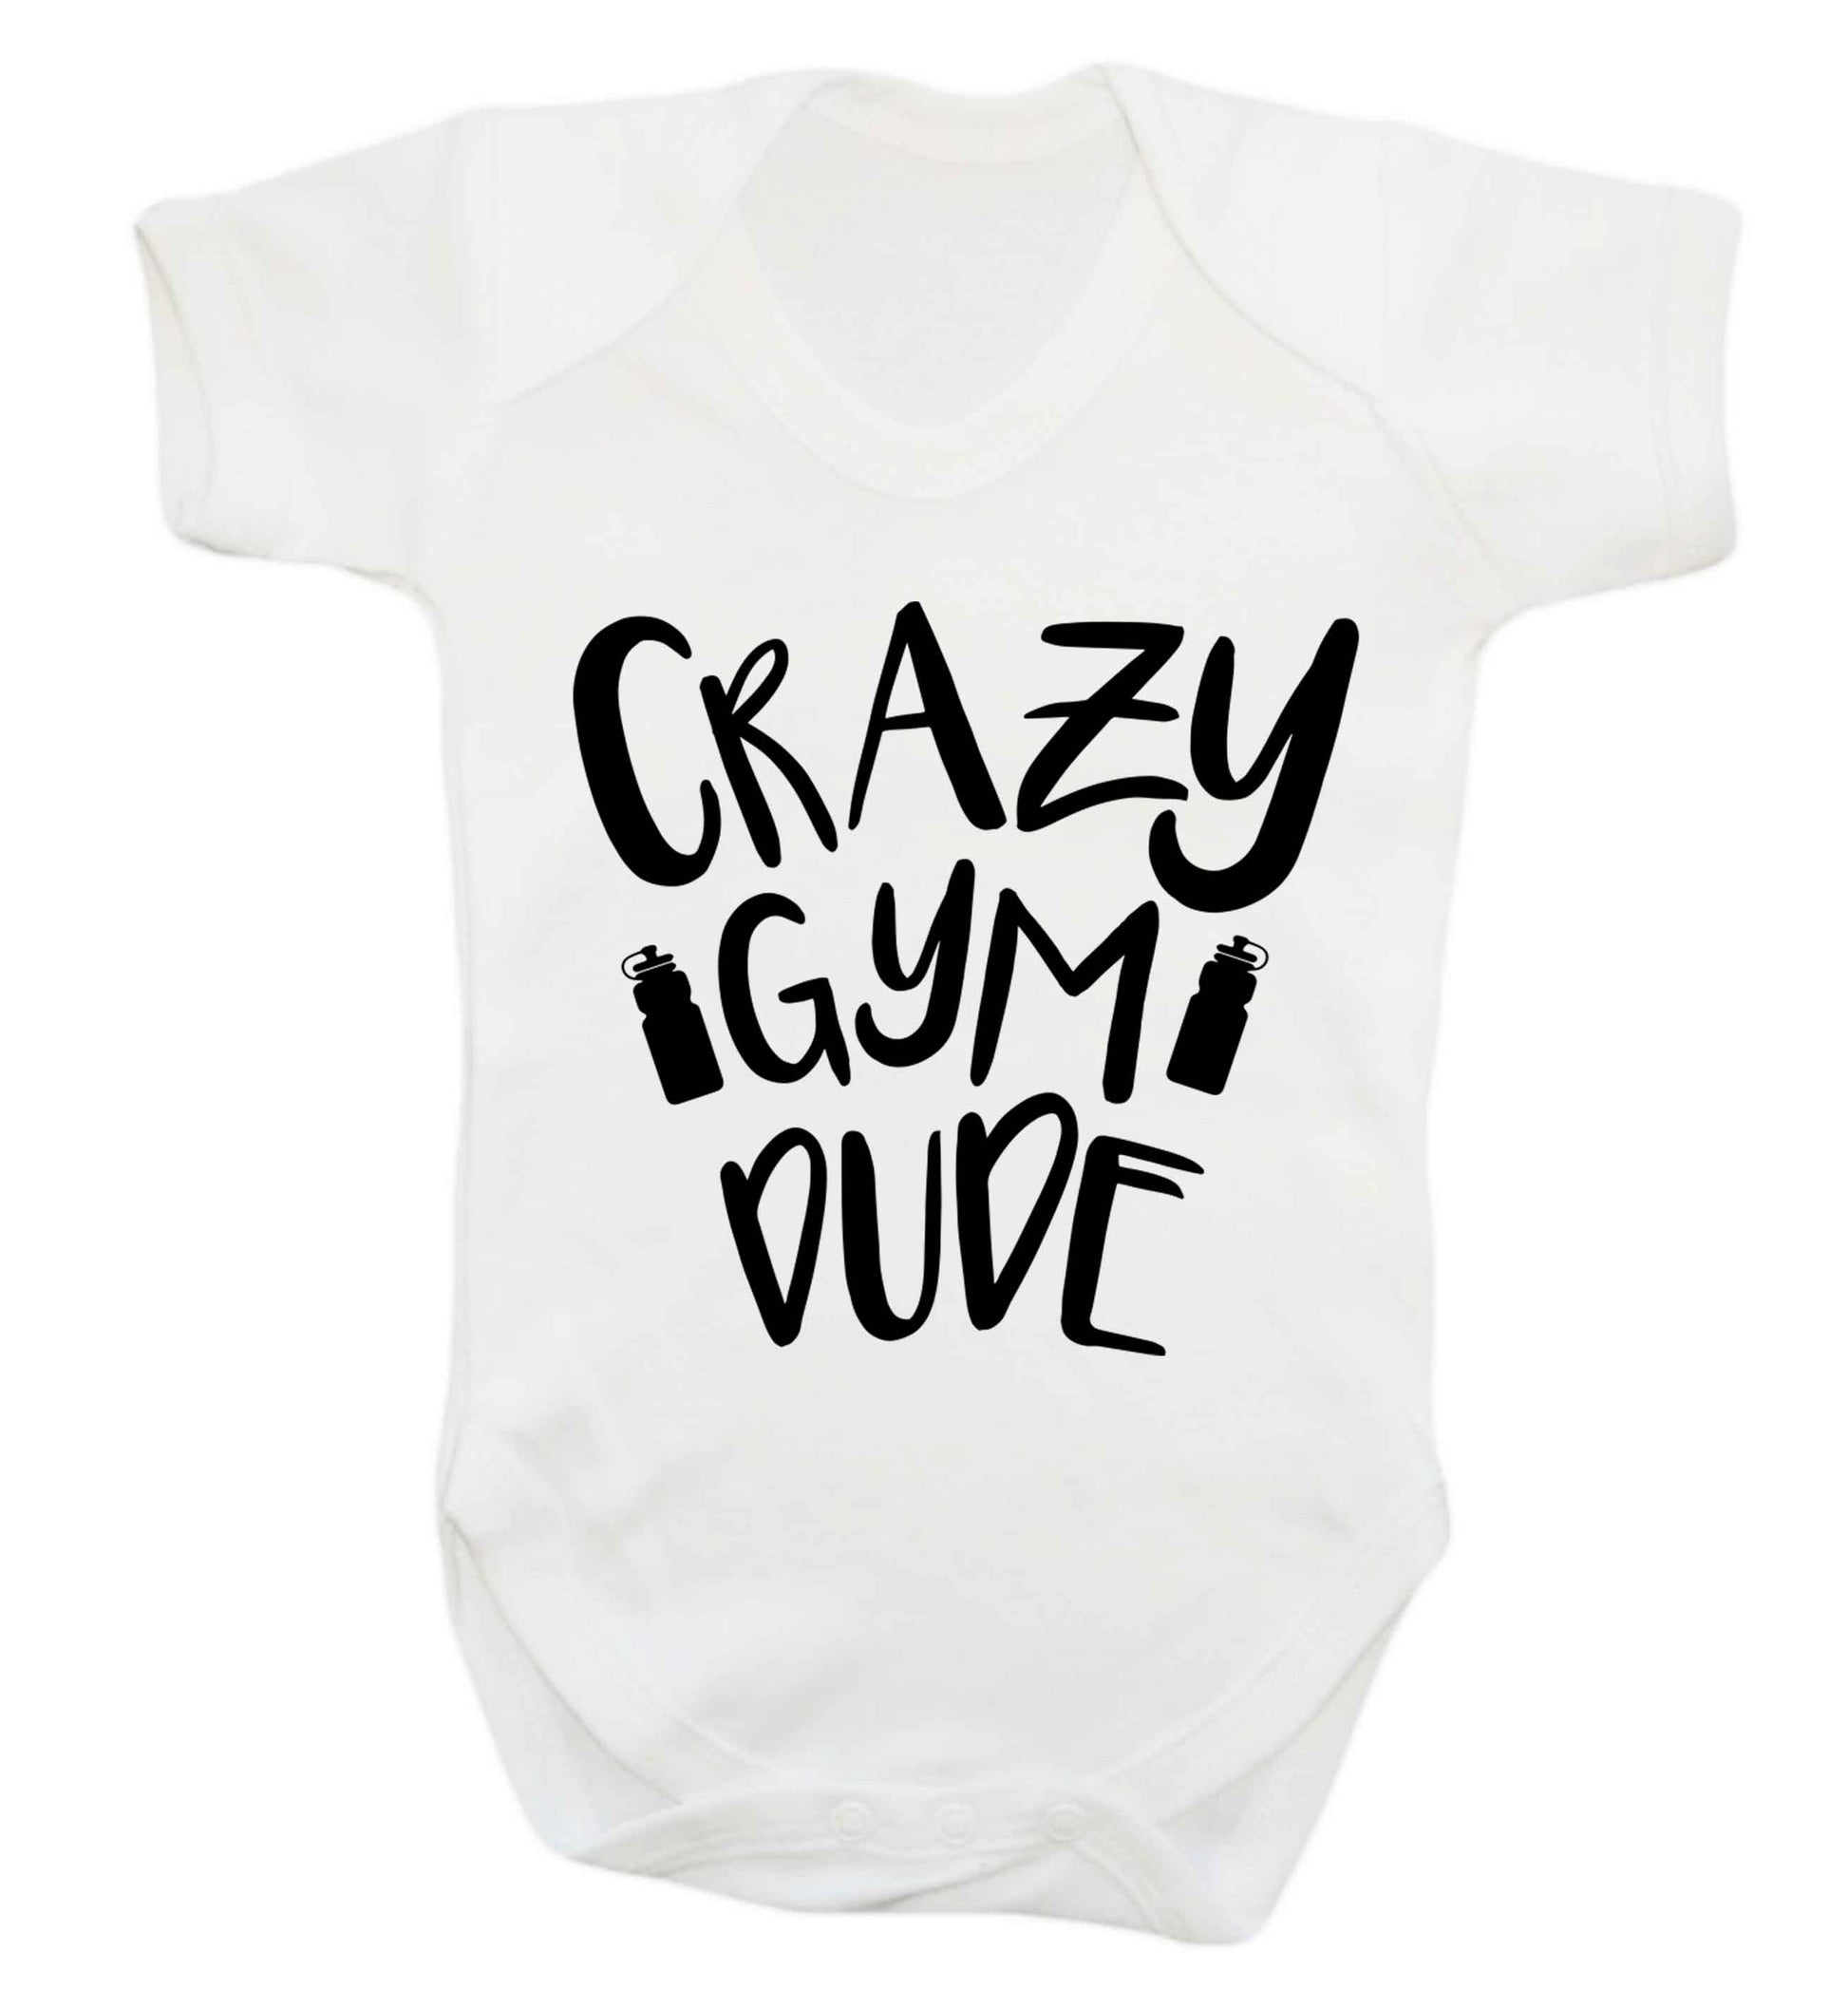 Crazy gym dude Baby Vest white 18-24 months